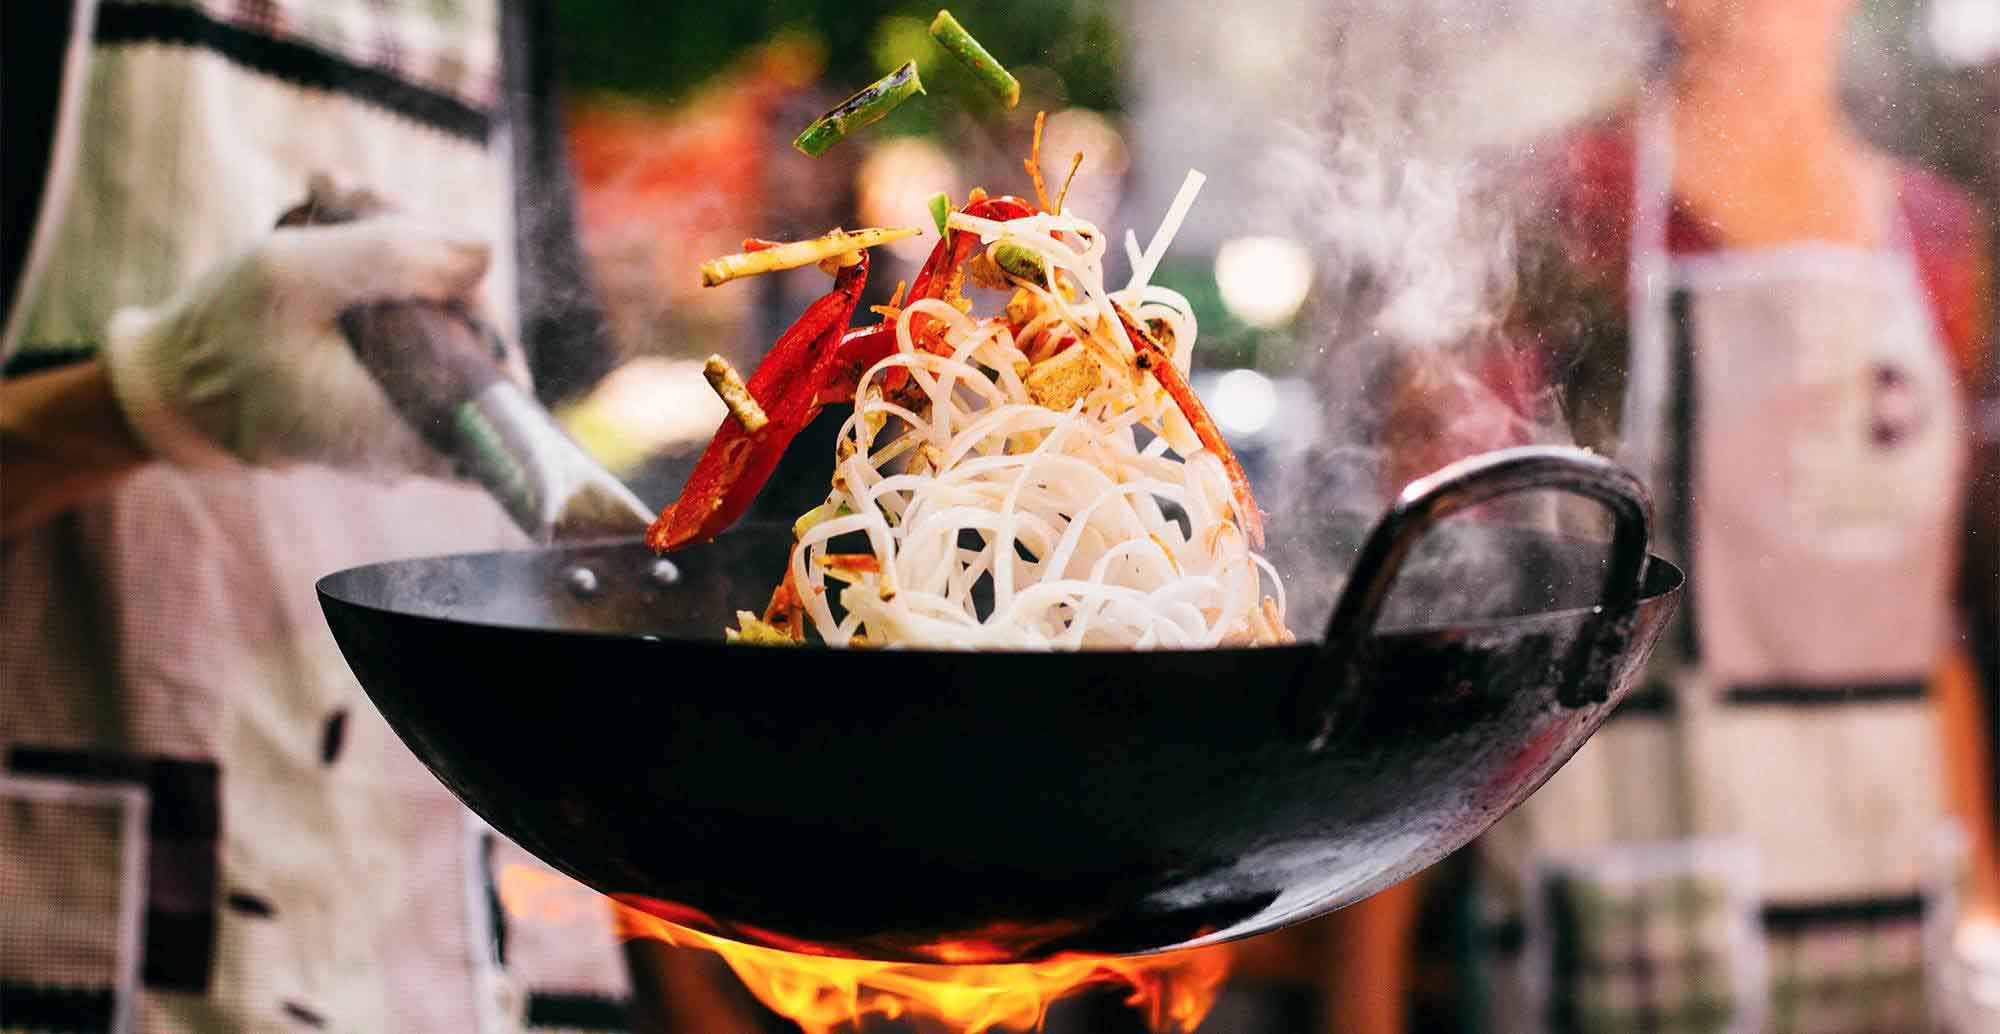 meilleur wok cuisine asiatique comparatif guide d'achat pas cher